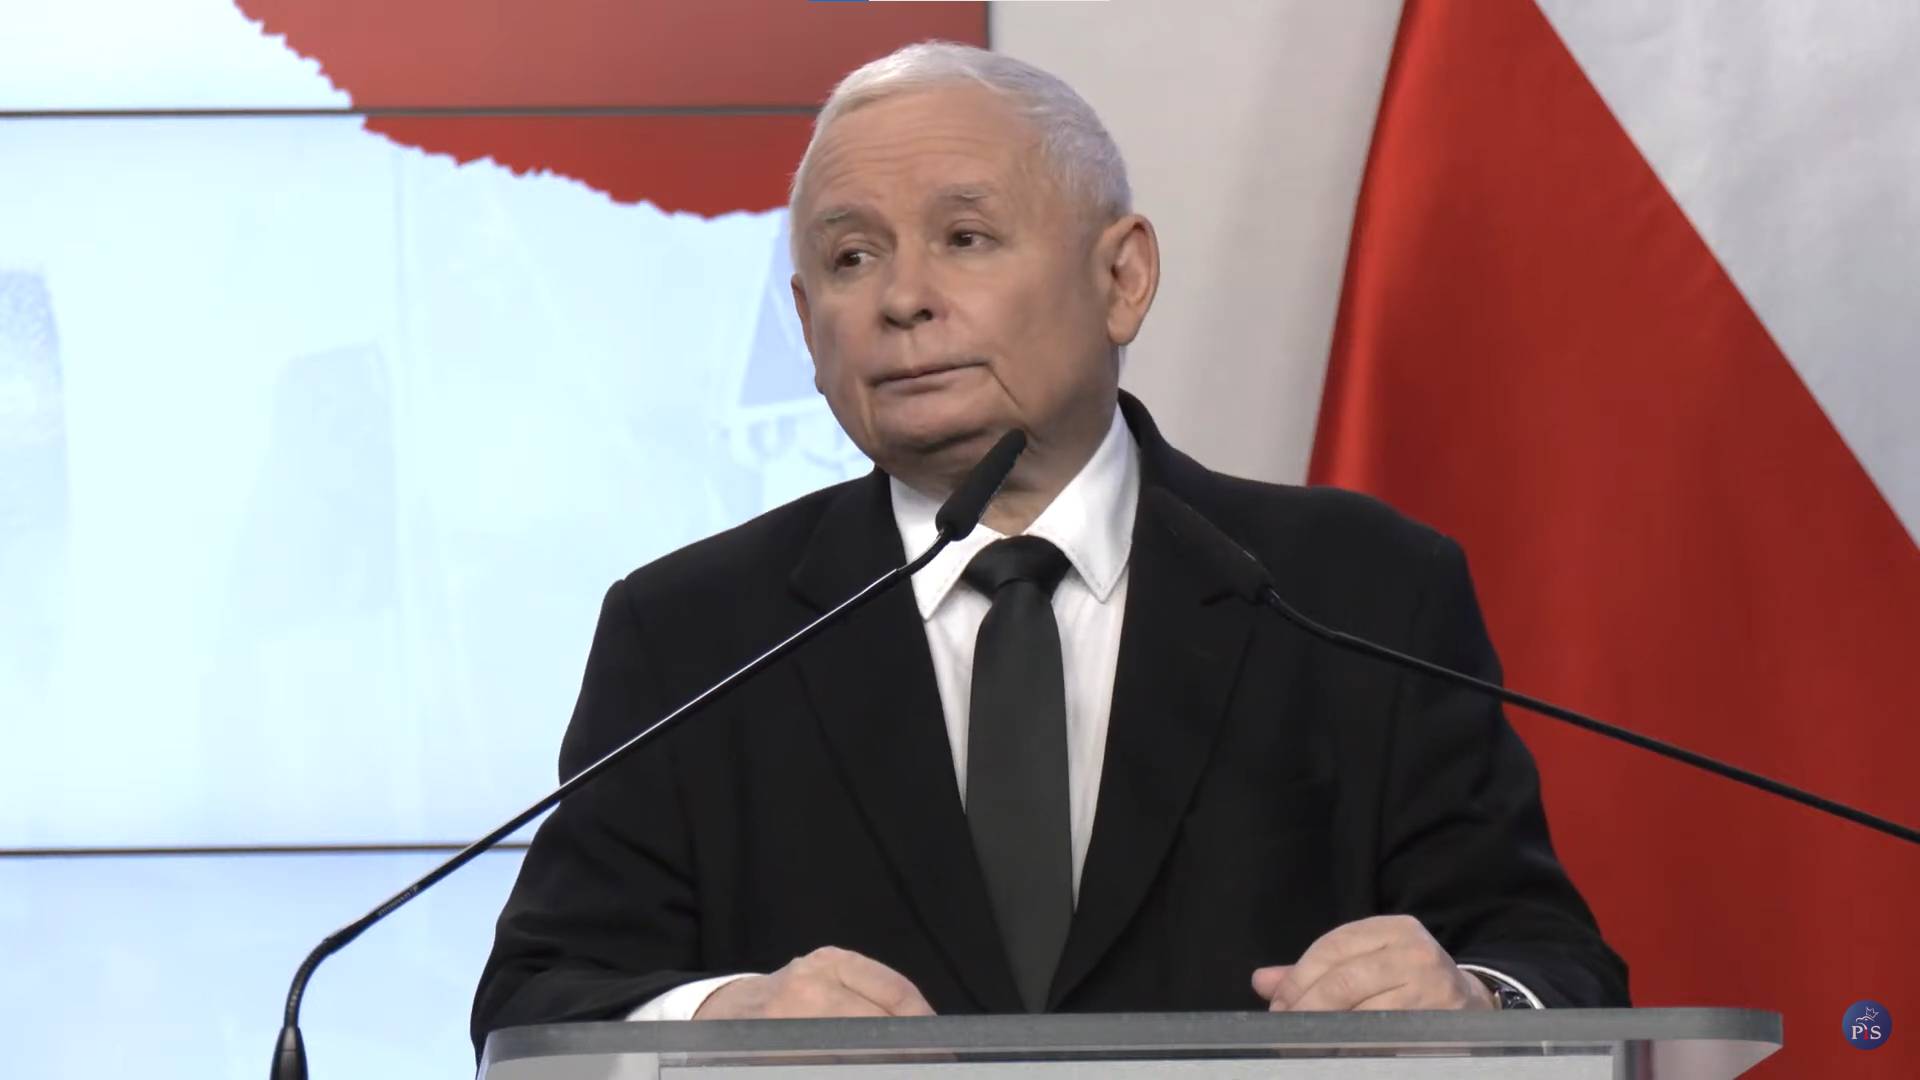 Prezes PiS Jarosław Kaczyński stoi przed mikrofonem podczas konferencji prasowej w siedzibie PiS na ulicy Nowogrodzkiej